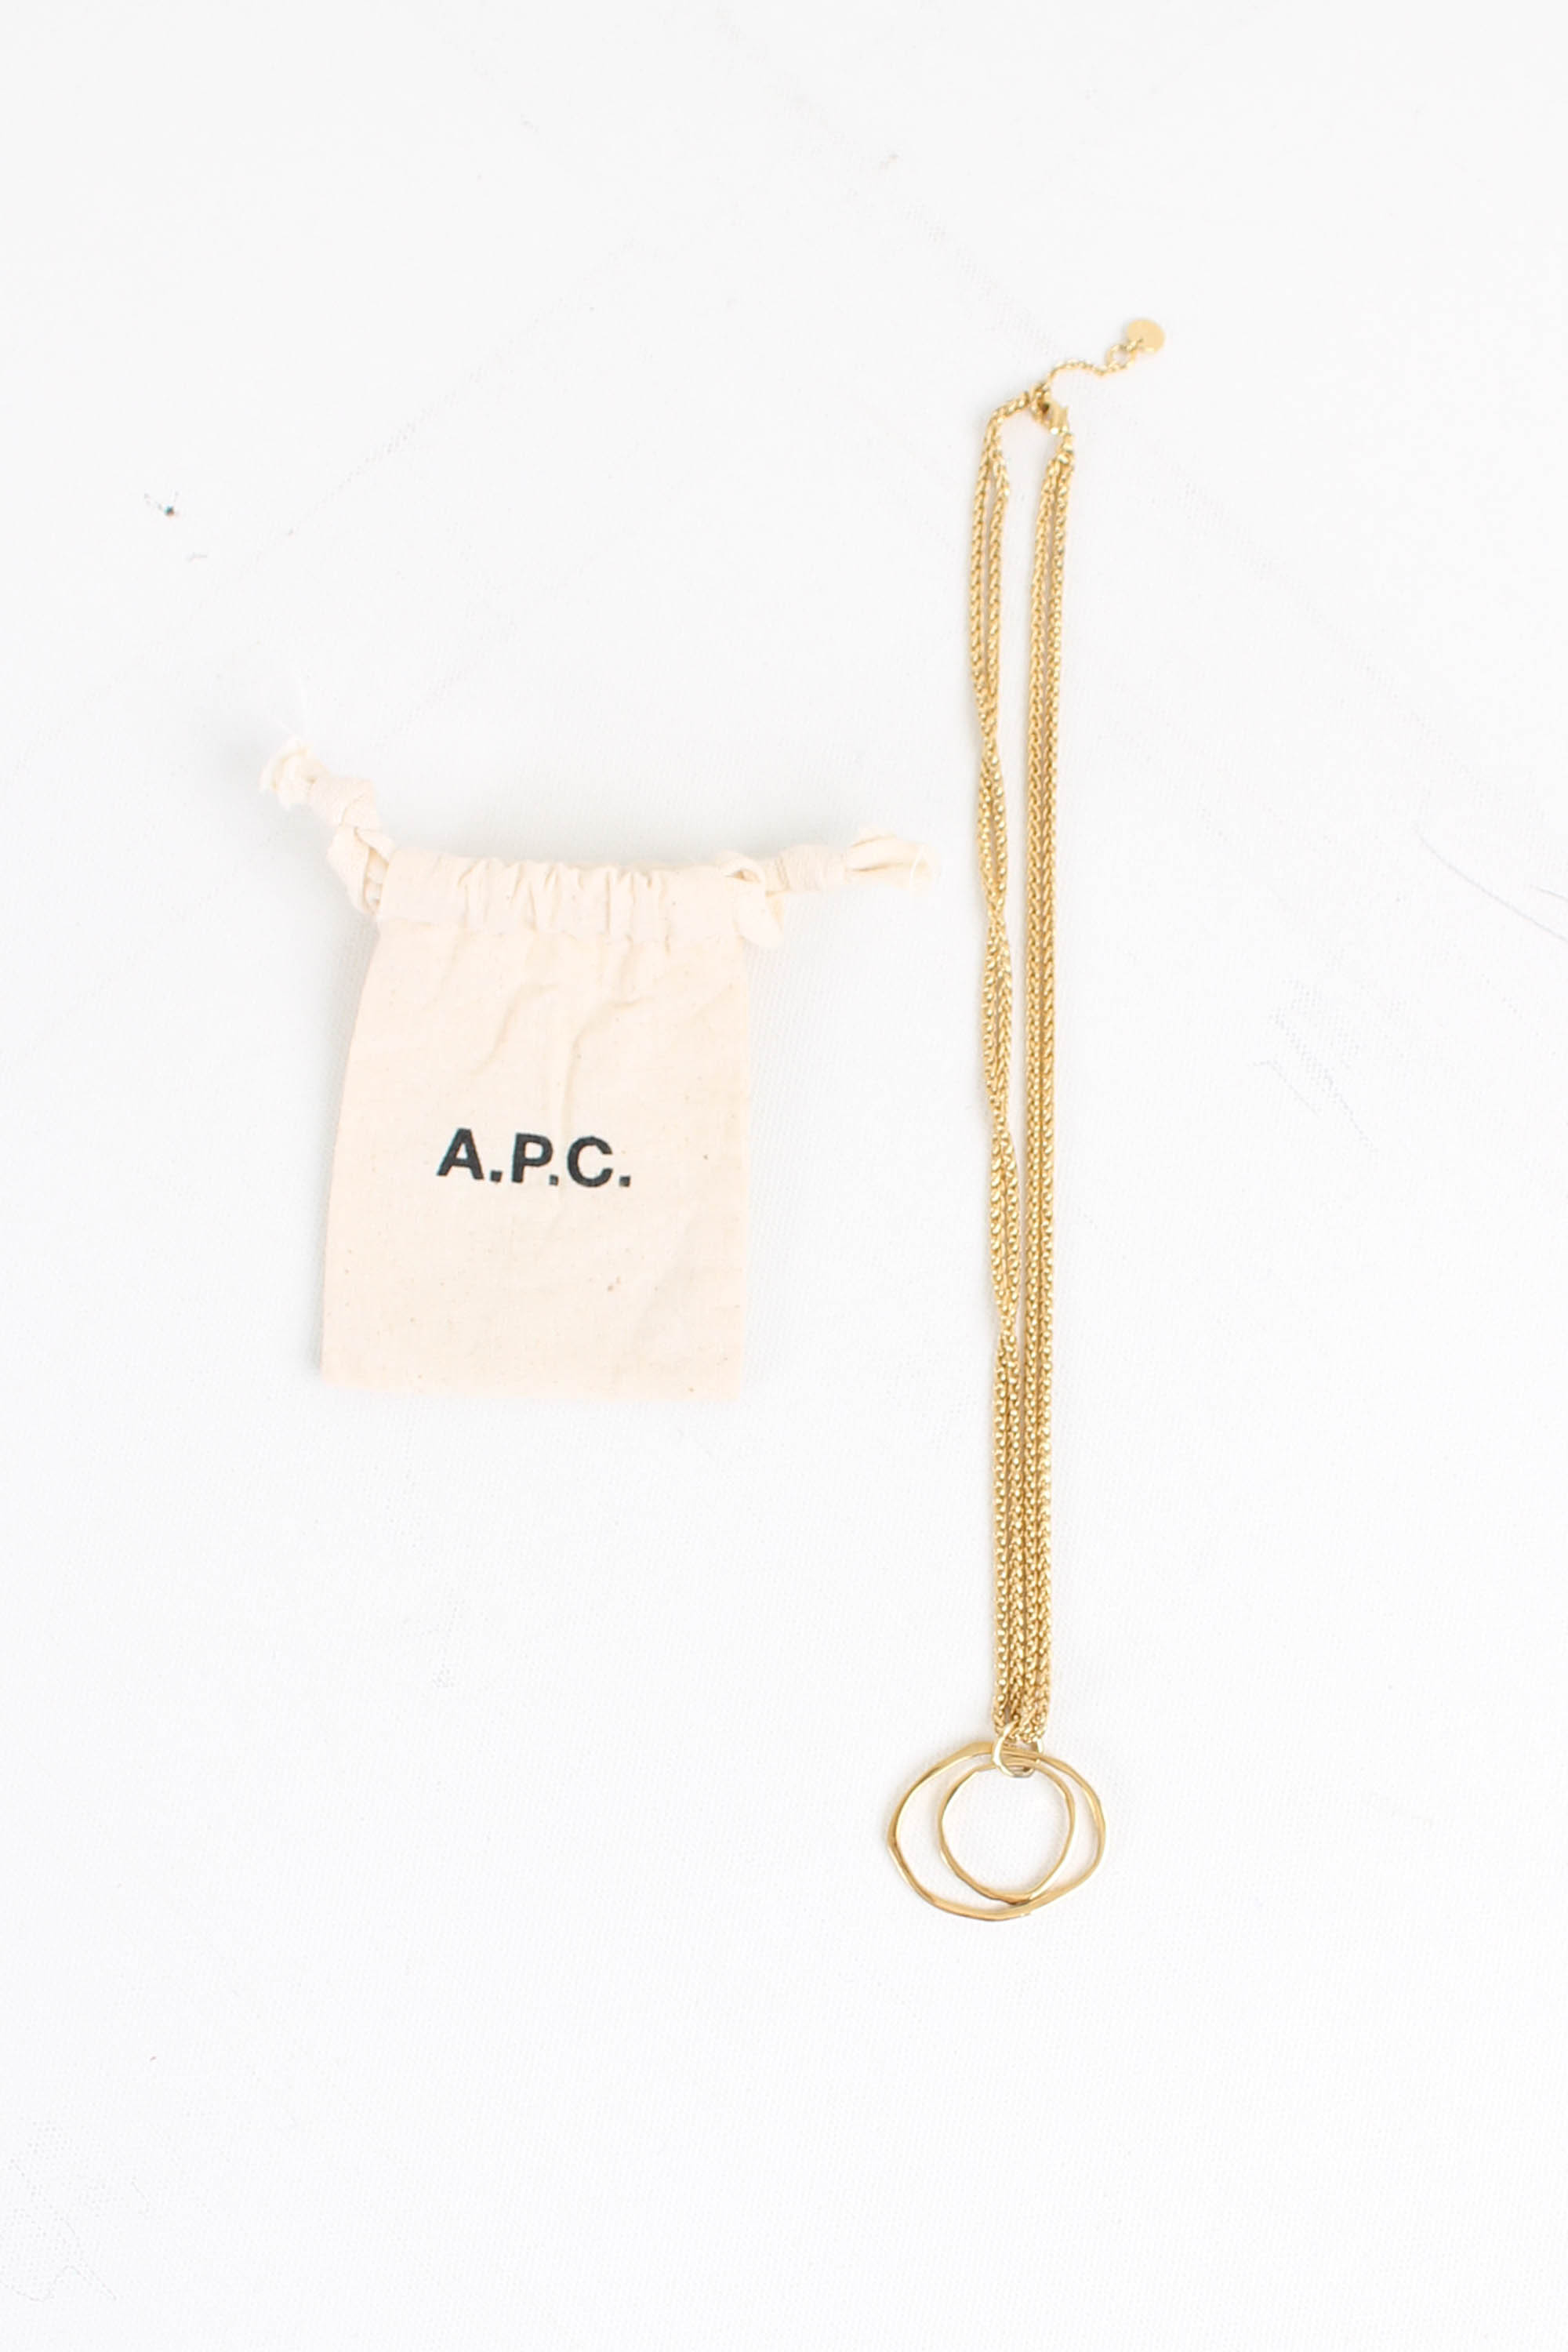 A.P.C necklace